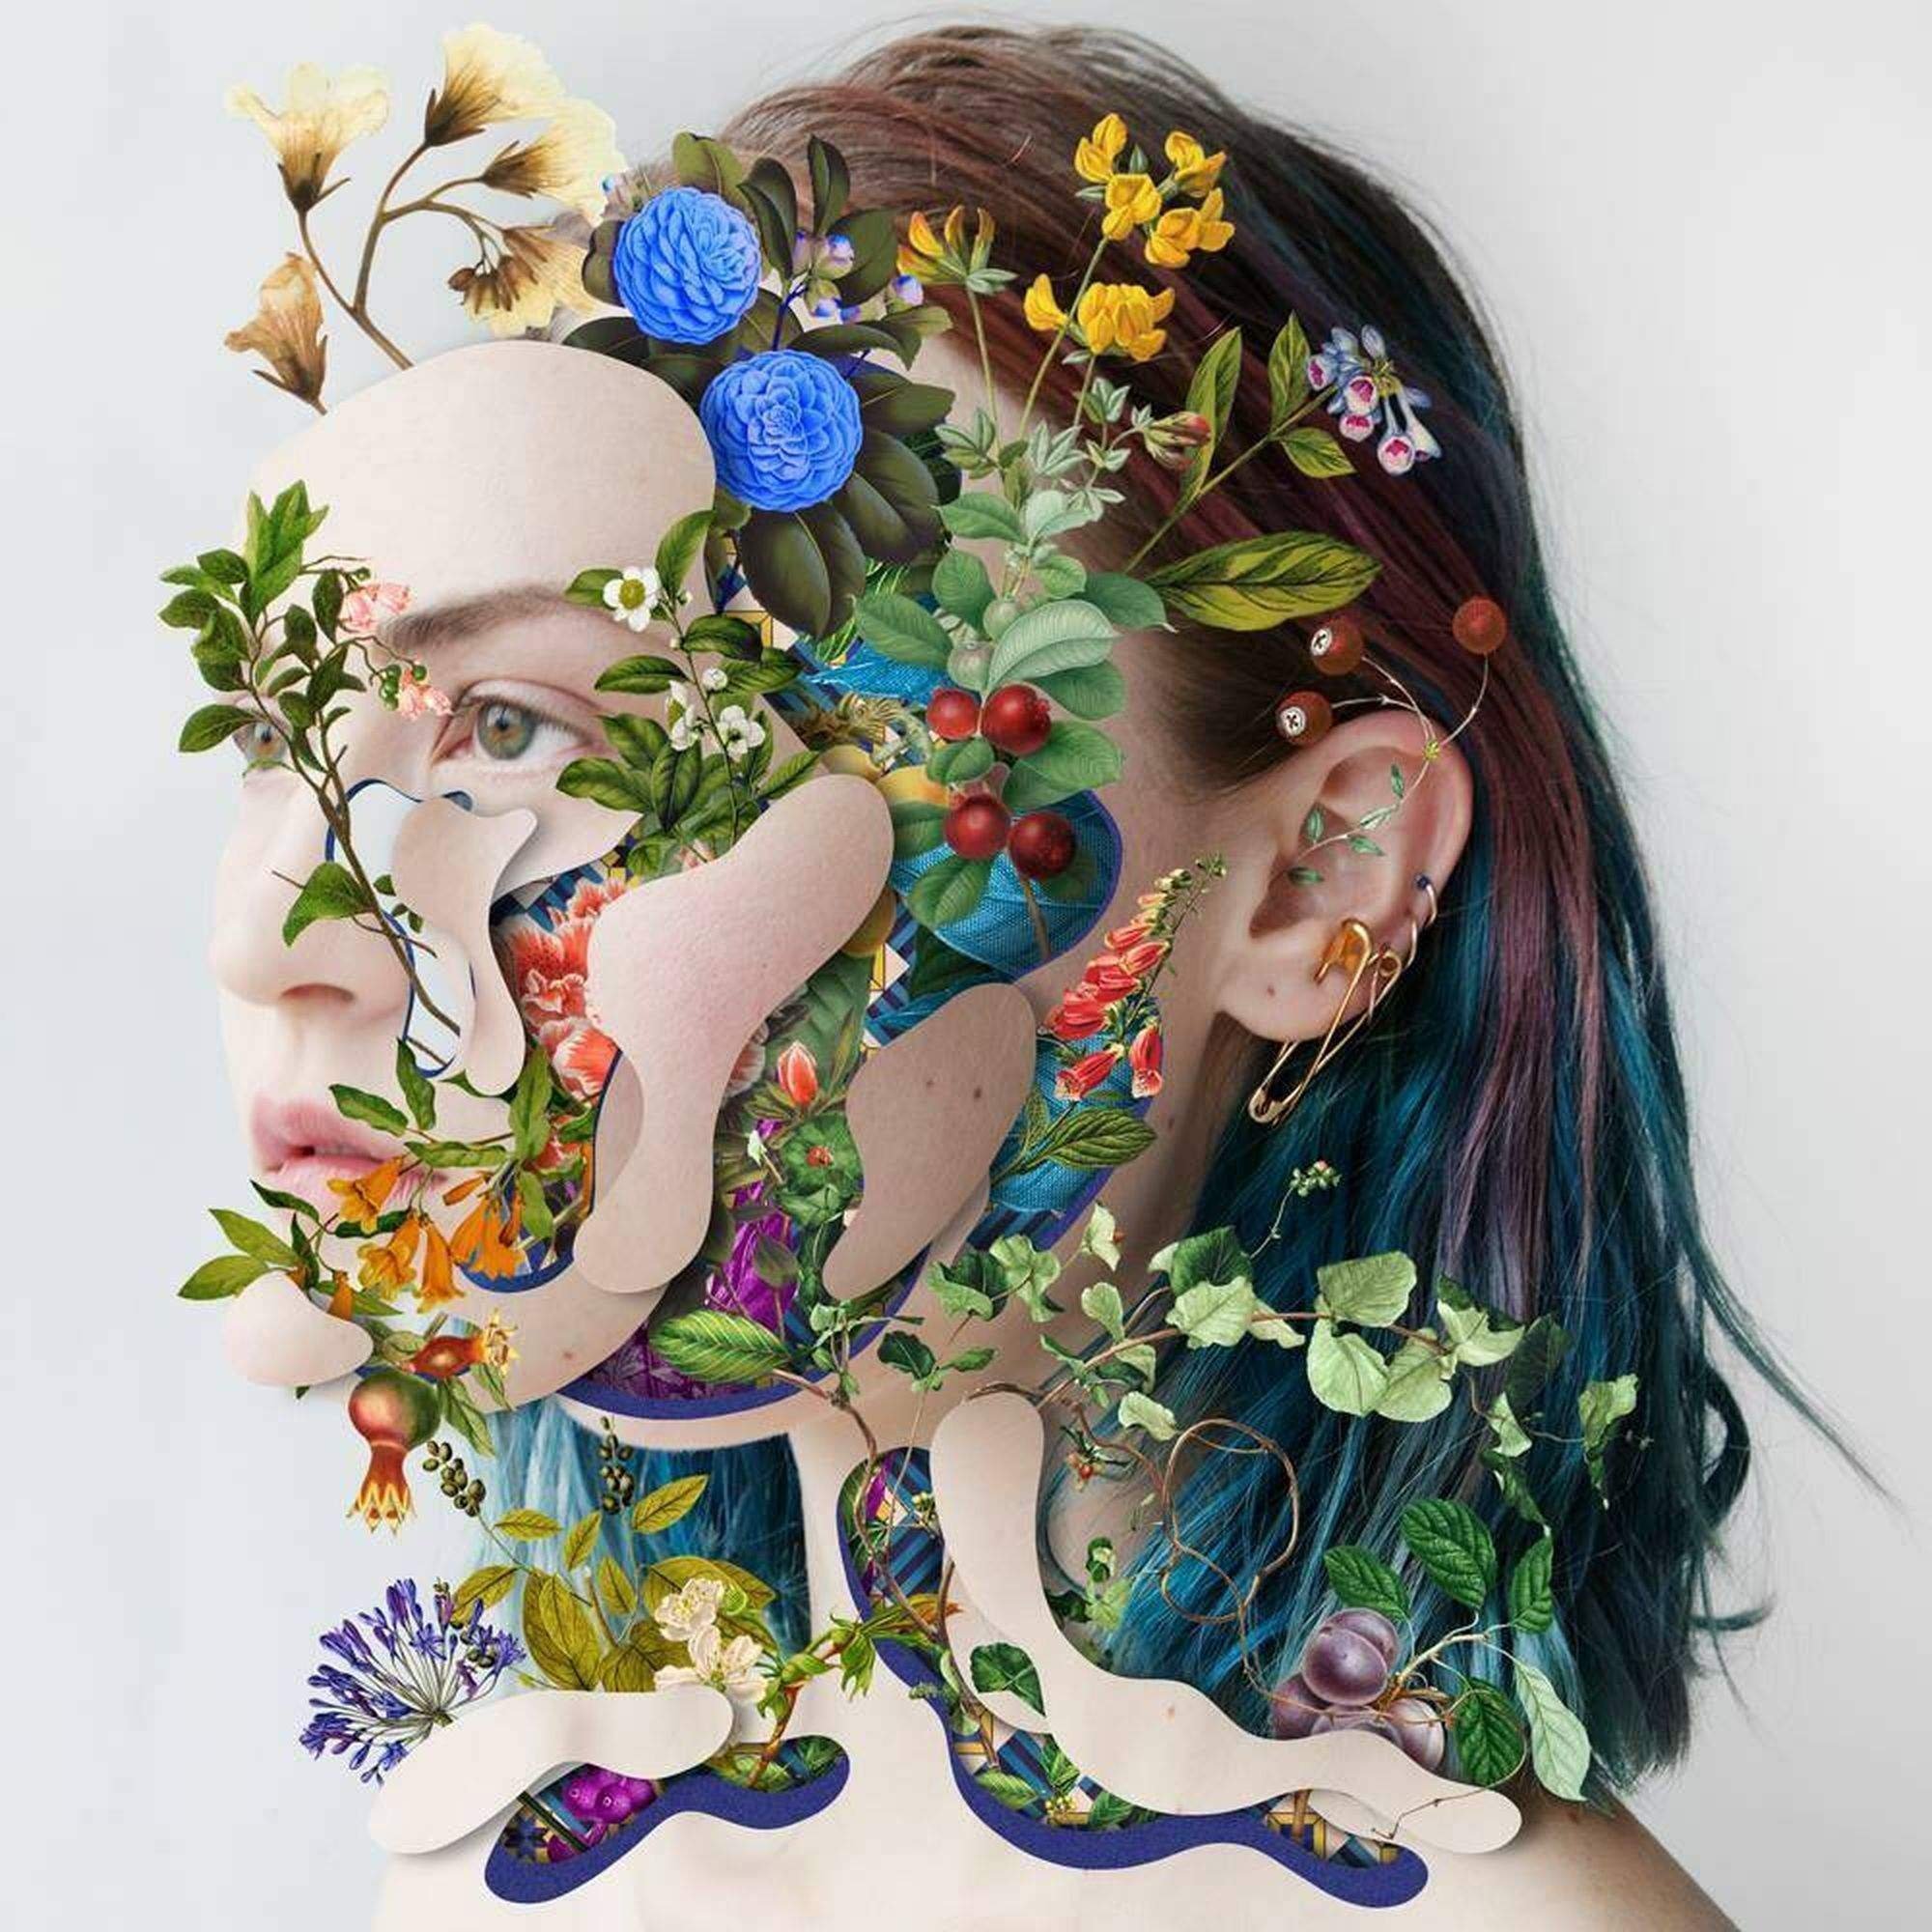 Интересные картины. Марсело Монреаль художник. Леся Сафина. Art-collage группа. Лицо из цветов.